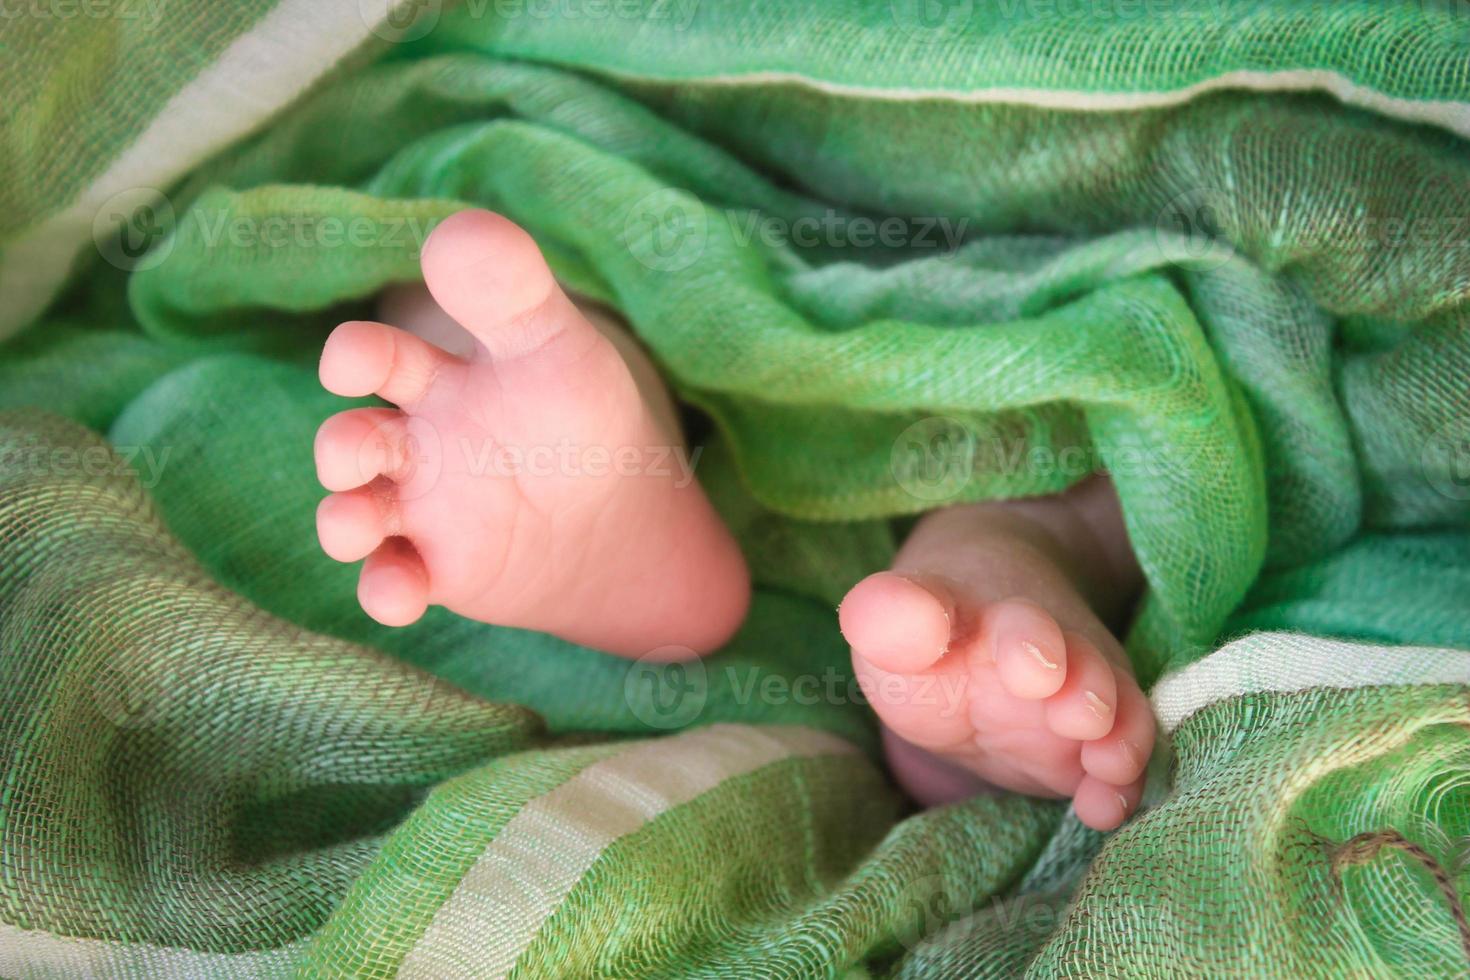 pies recién nacido bebé foto